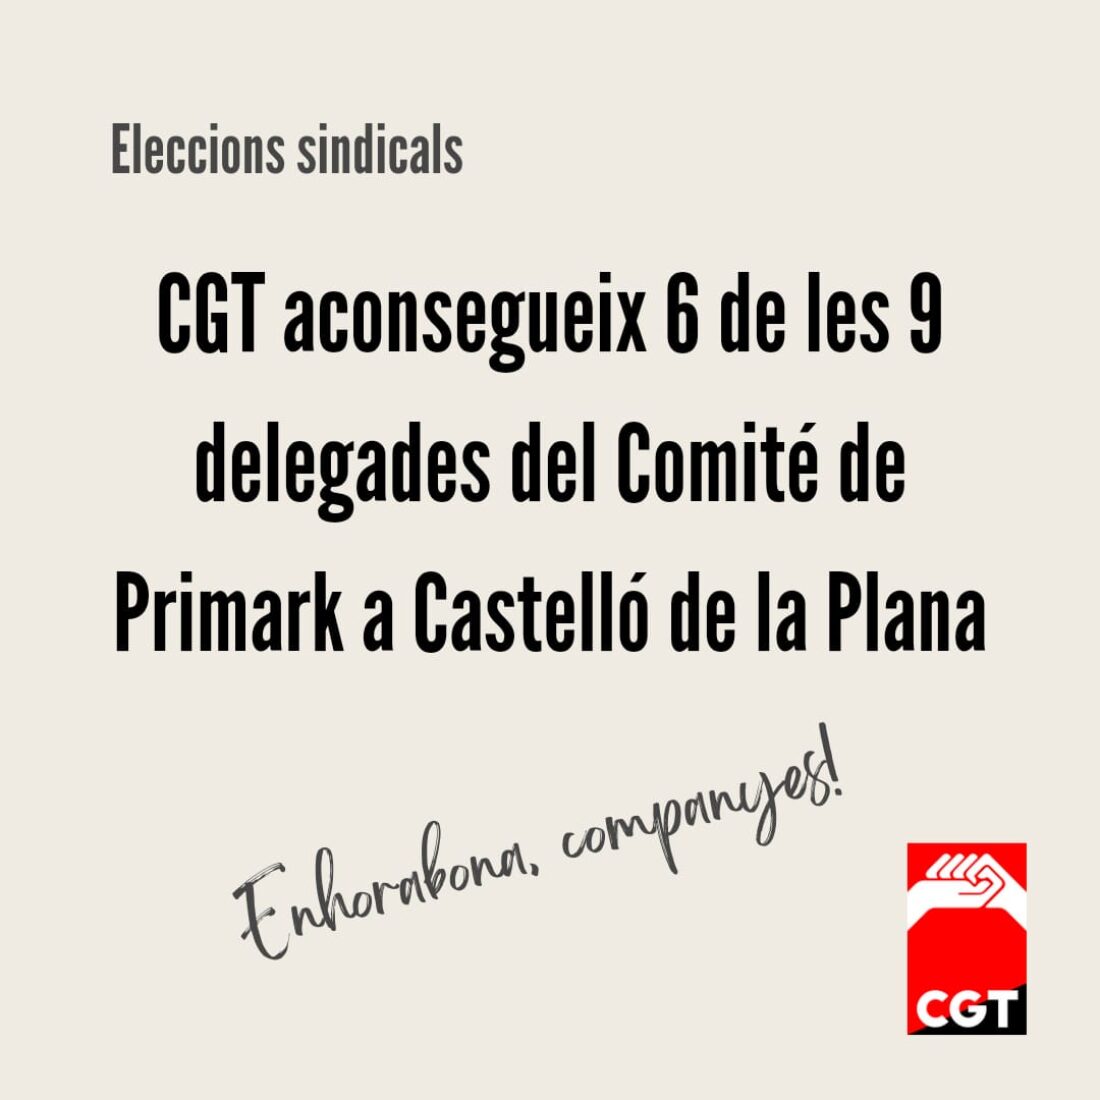 Elecciones sindicales Primark Castelló